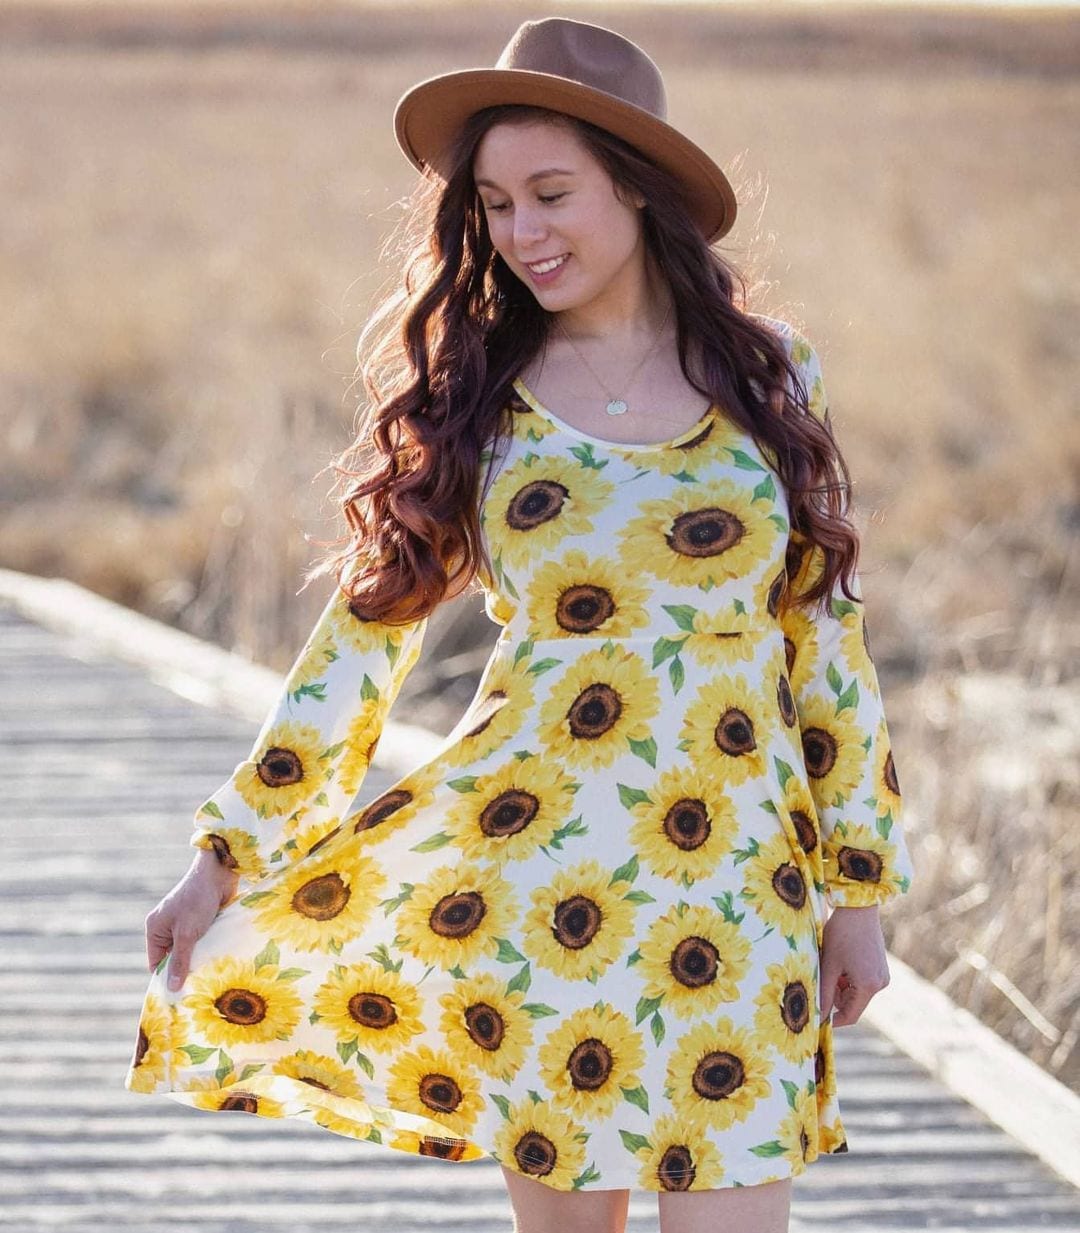 50 ideas de vestidos de girasoles que te harán lucir increíble